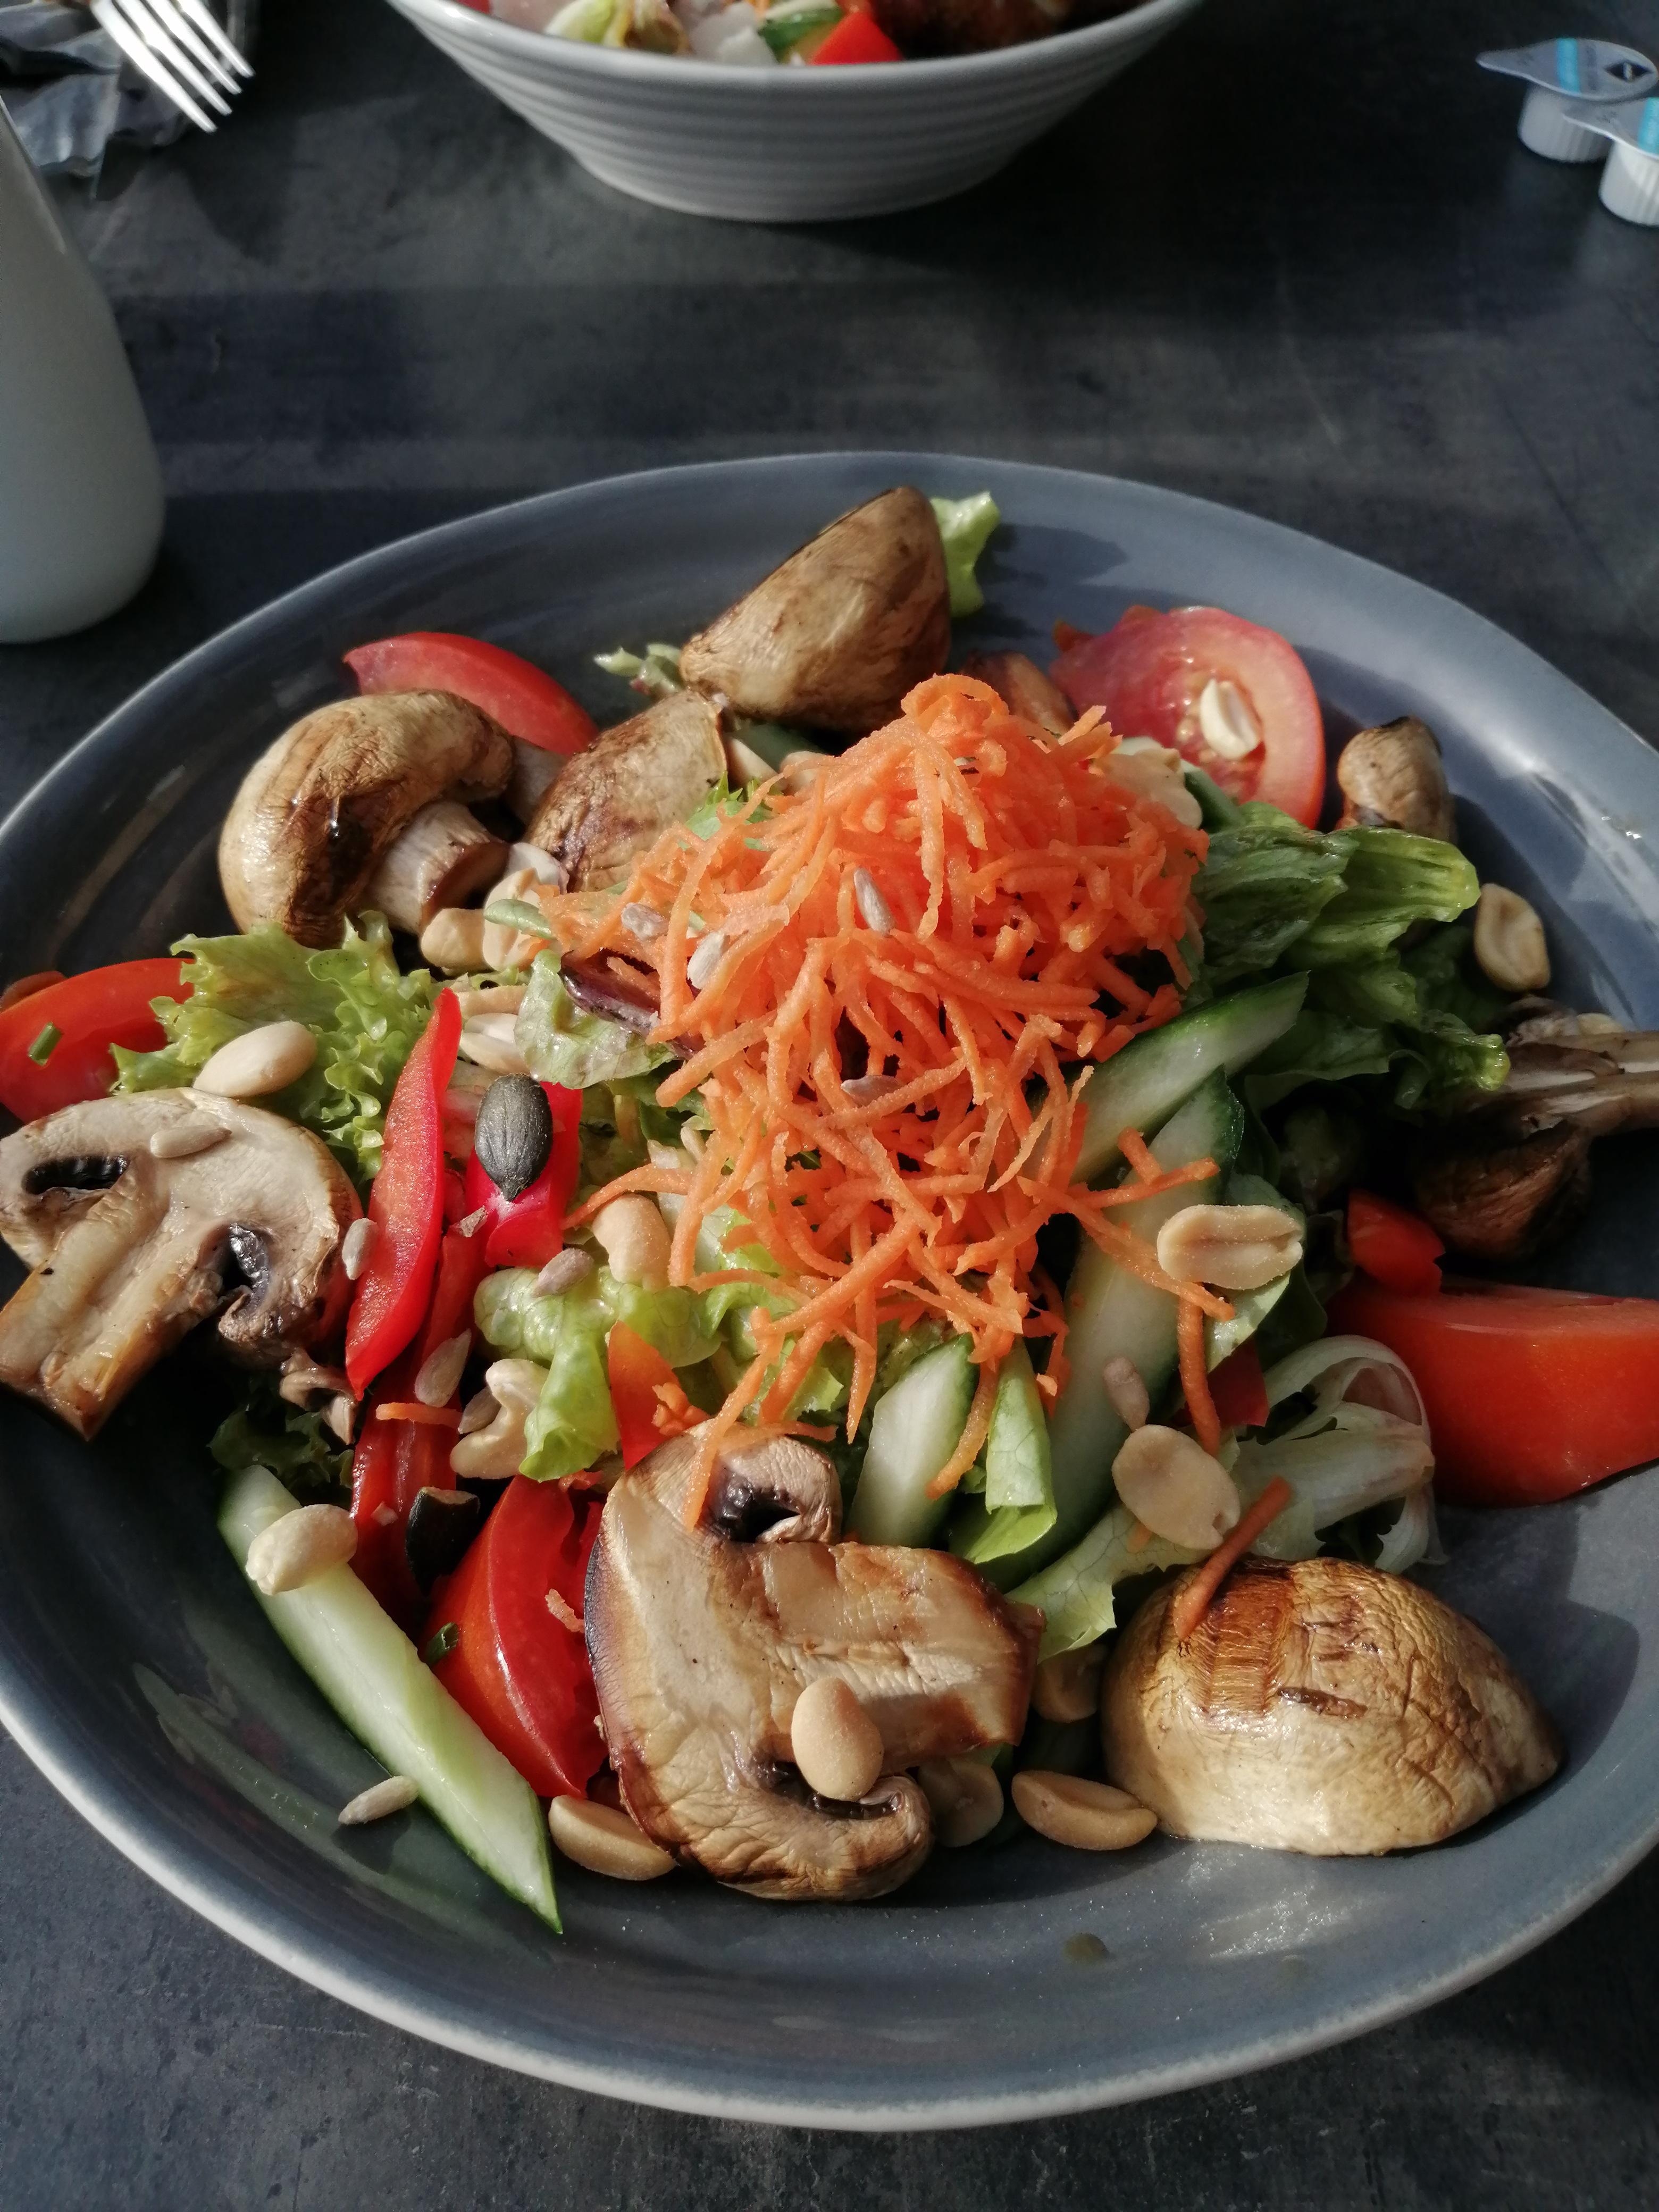 #leckeressen#gesund#salat
#vegetarisch